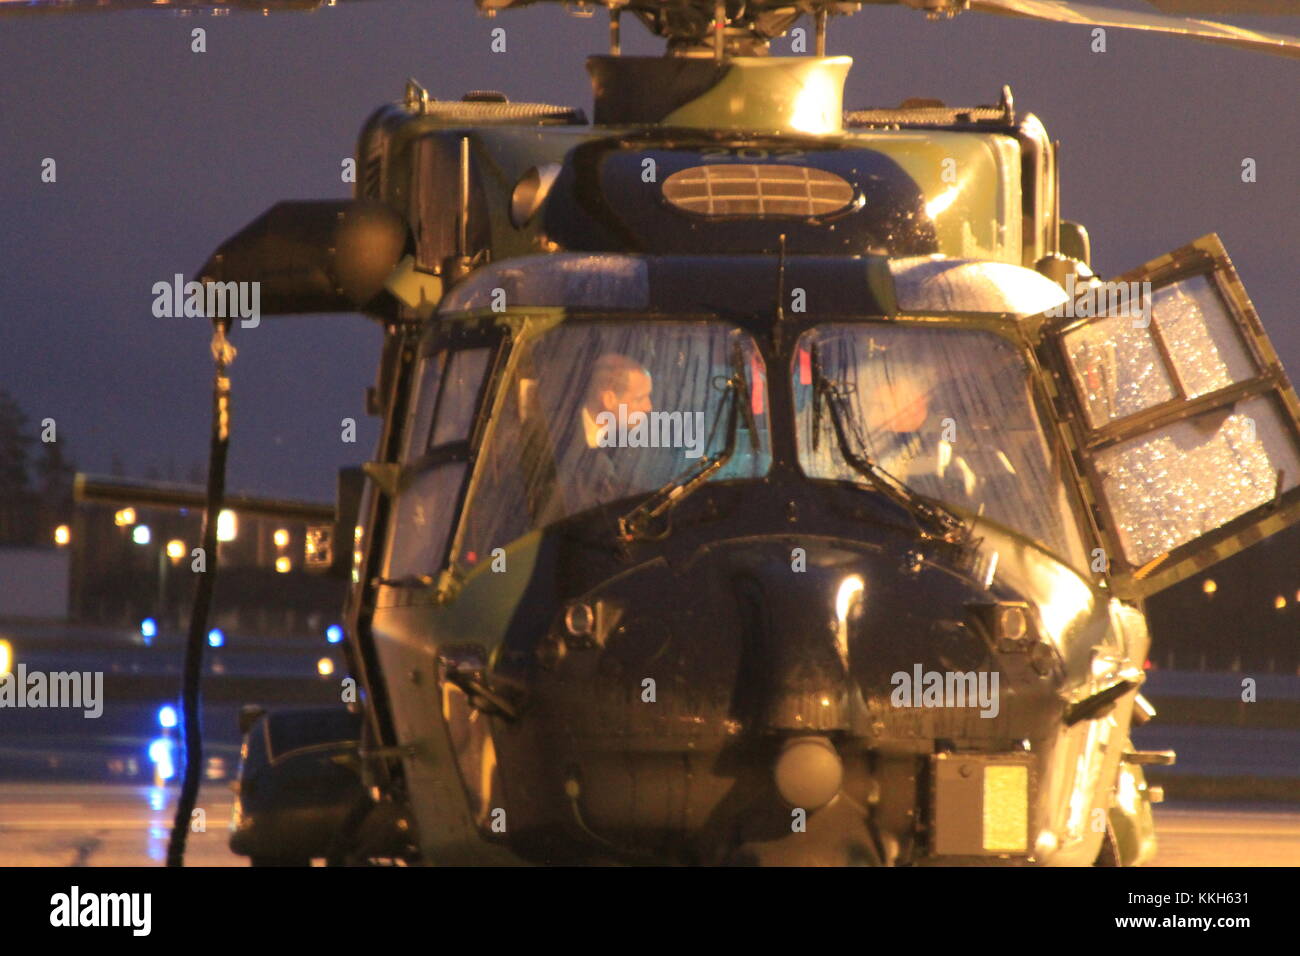 Vantaa, Finnland. 30. November 2017. Prinz William sich mit einer NH90 Hubschrauber vertraut machen. Heini Kettunen/Alamy Live Newsews Stockfoto